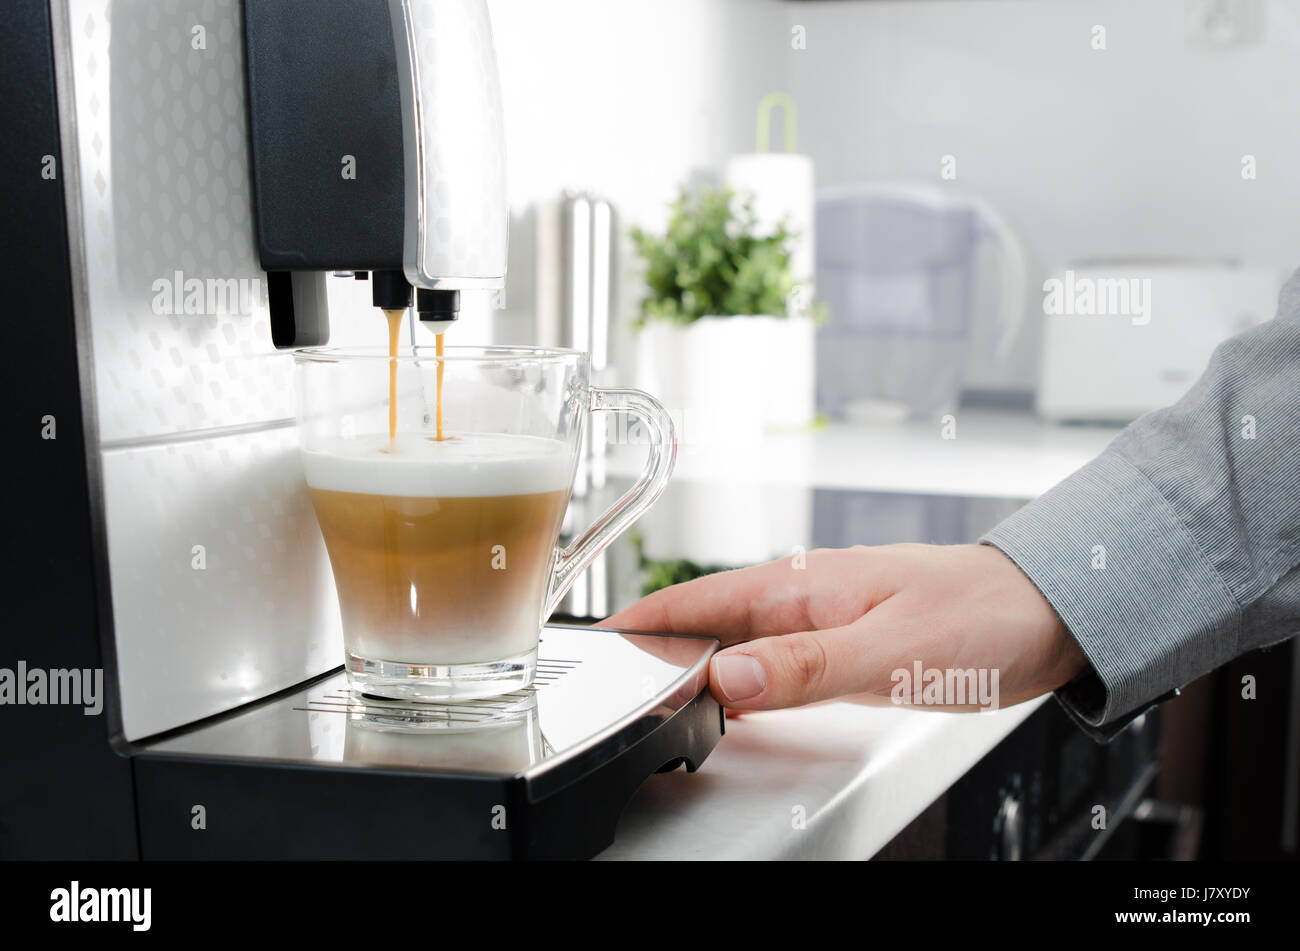 Zu Hause professionelle Kaffeemaschine mit Cappuccino-Tasse. Kaffee  Maschine Latte Macchiato Cappuccino-Milchschaum zubereiten Konzept  Stockfotografie - Alamy